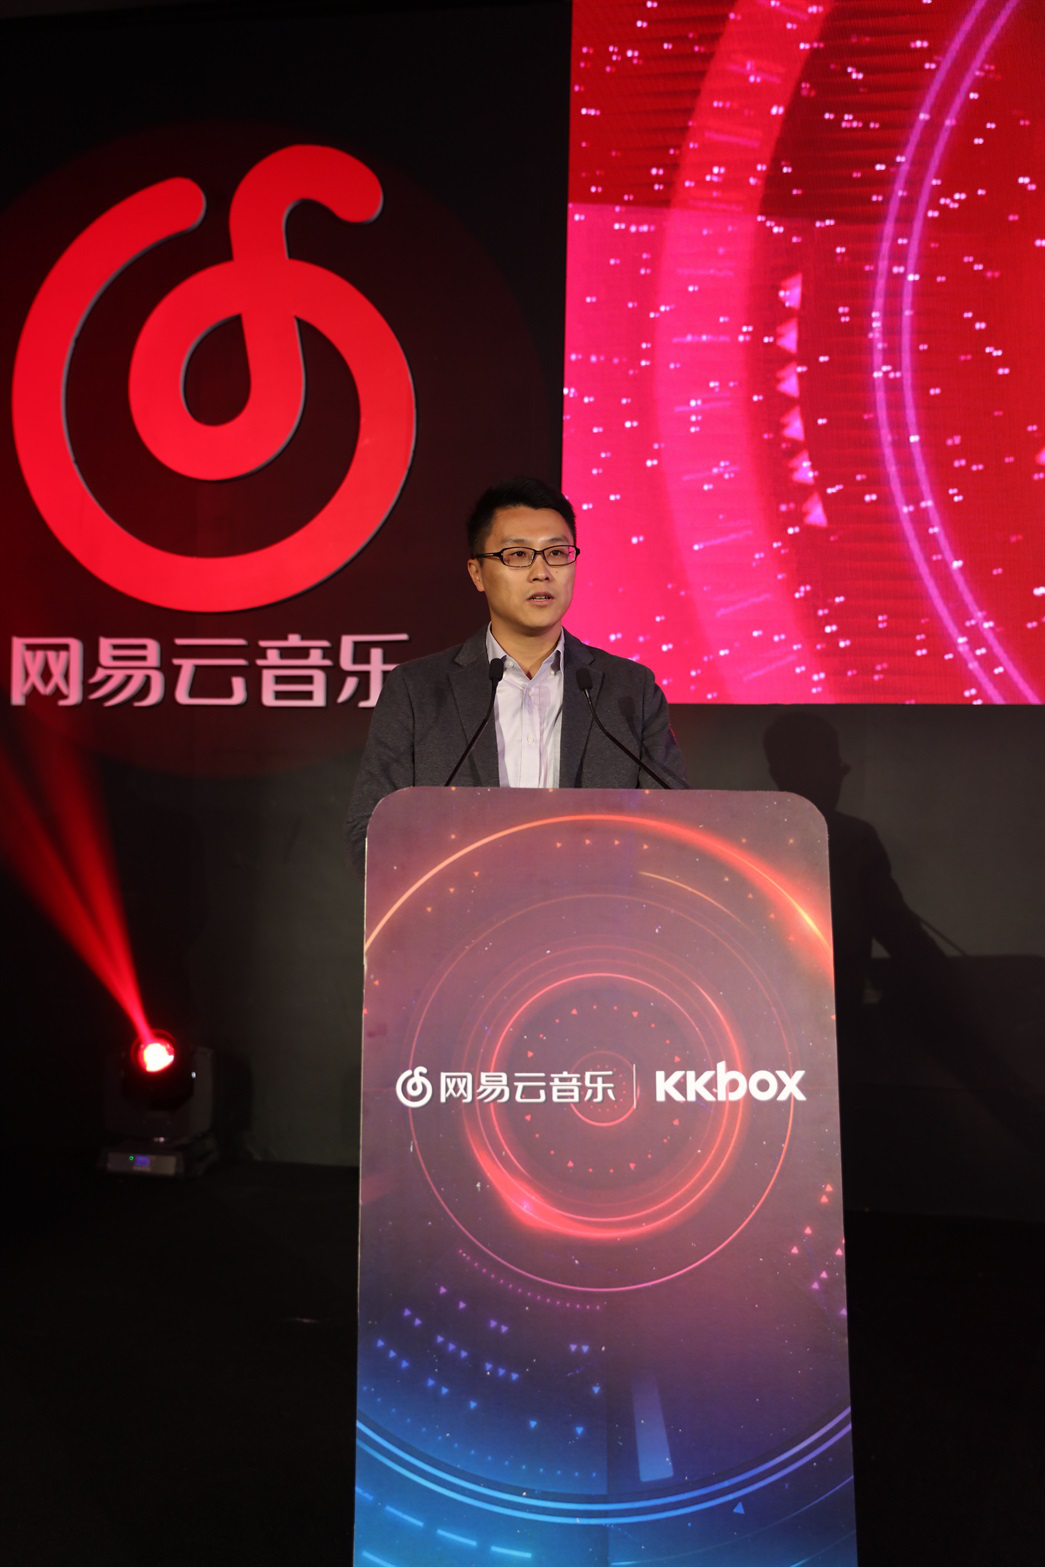 网易云音乐和KKBOX宣布战略合作 打造全球最大的华语音乐宣传平台